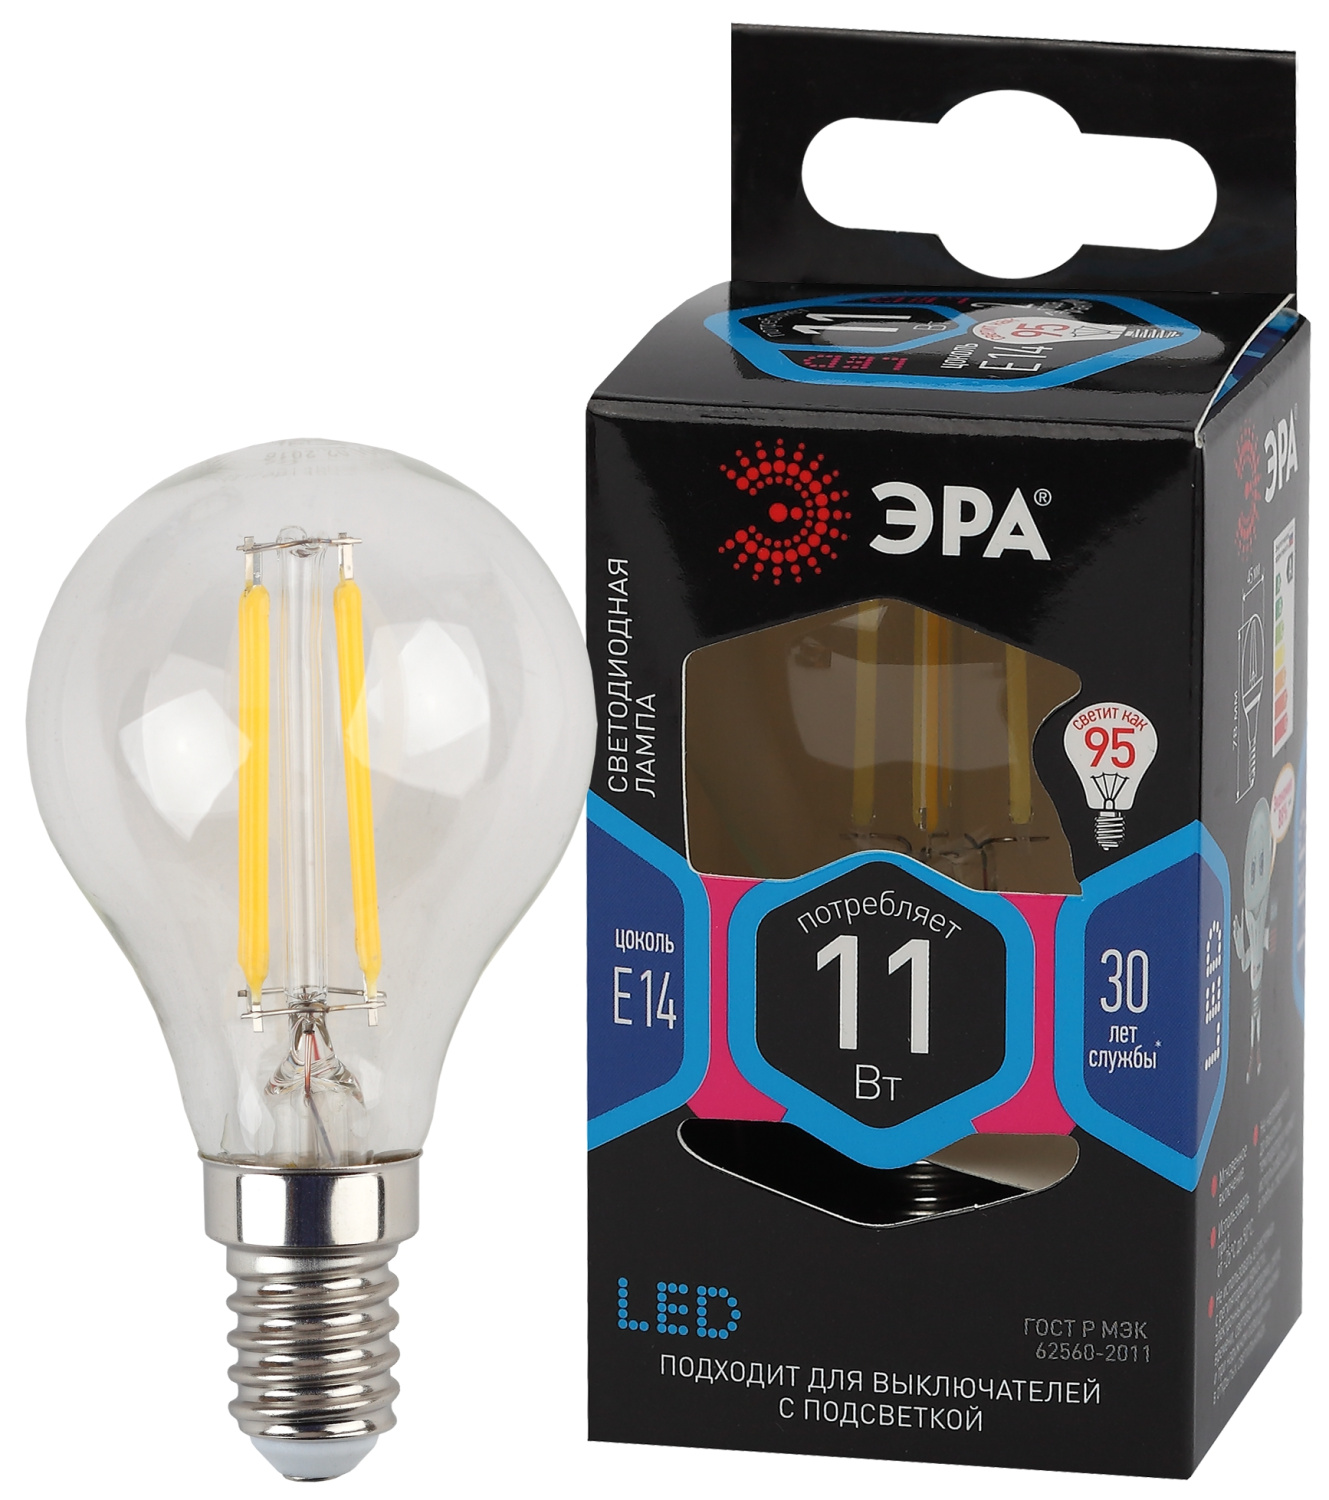 Изображение Б0047014 | Лампа светодиодная Filament-LED P45 шарик 11 Вт 230В Е14 4000К белый Б0047014 ЭРА (Энергия света) в магазине ЭлектроМИР